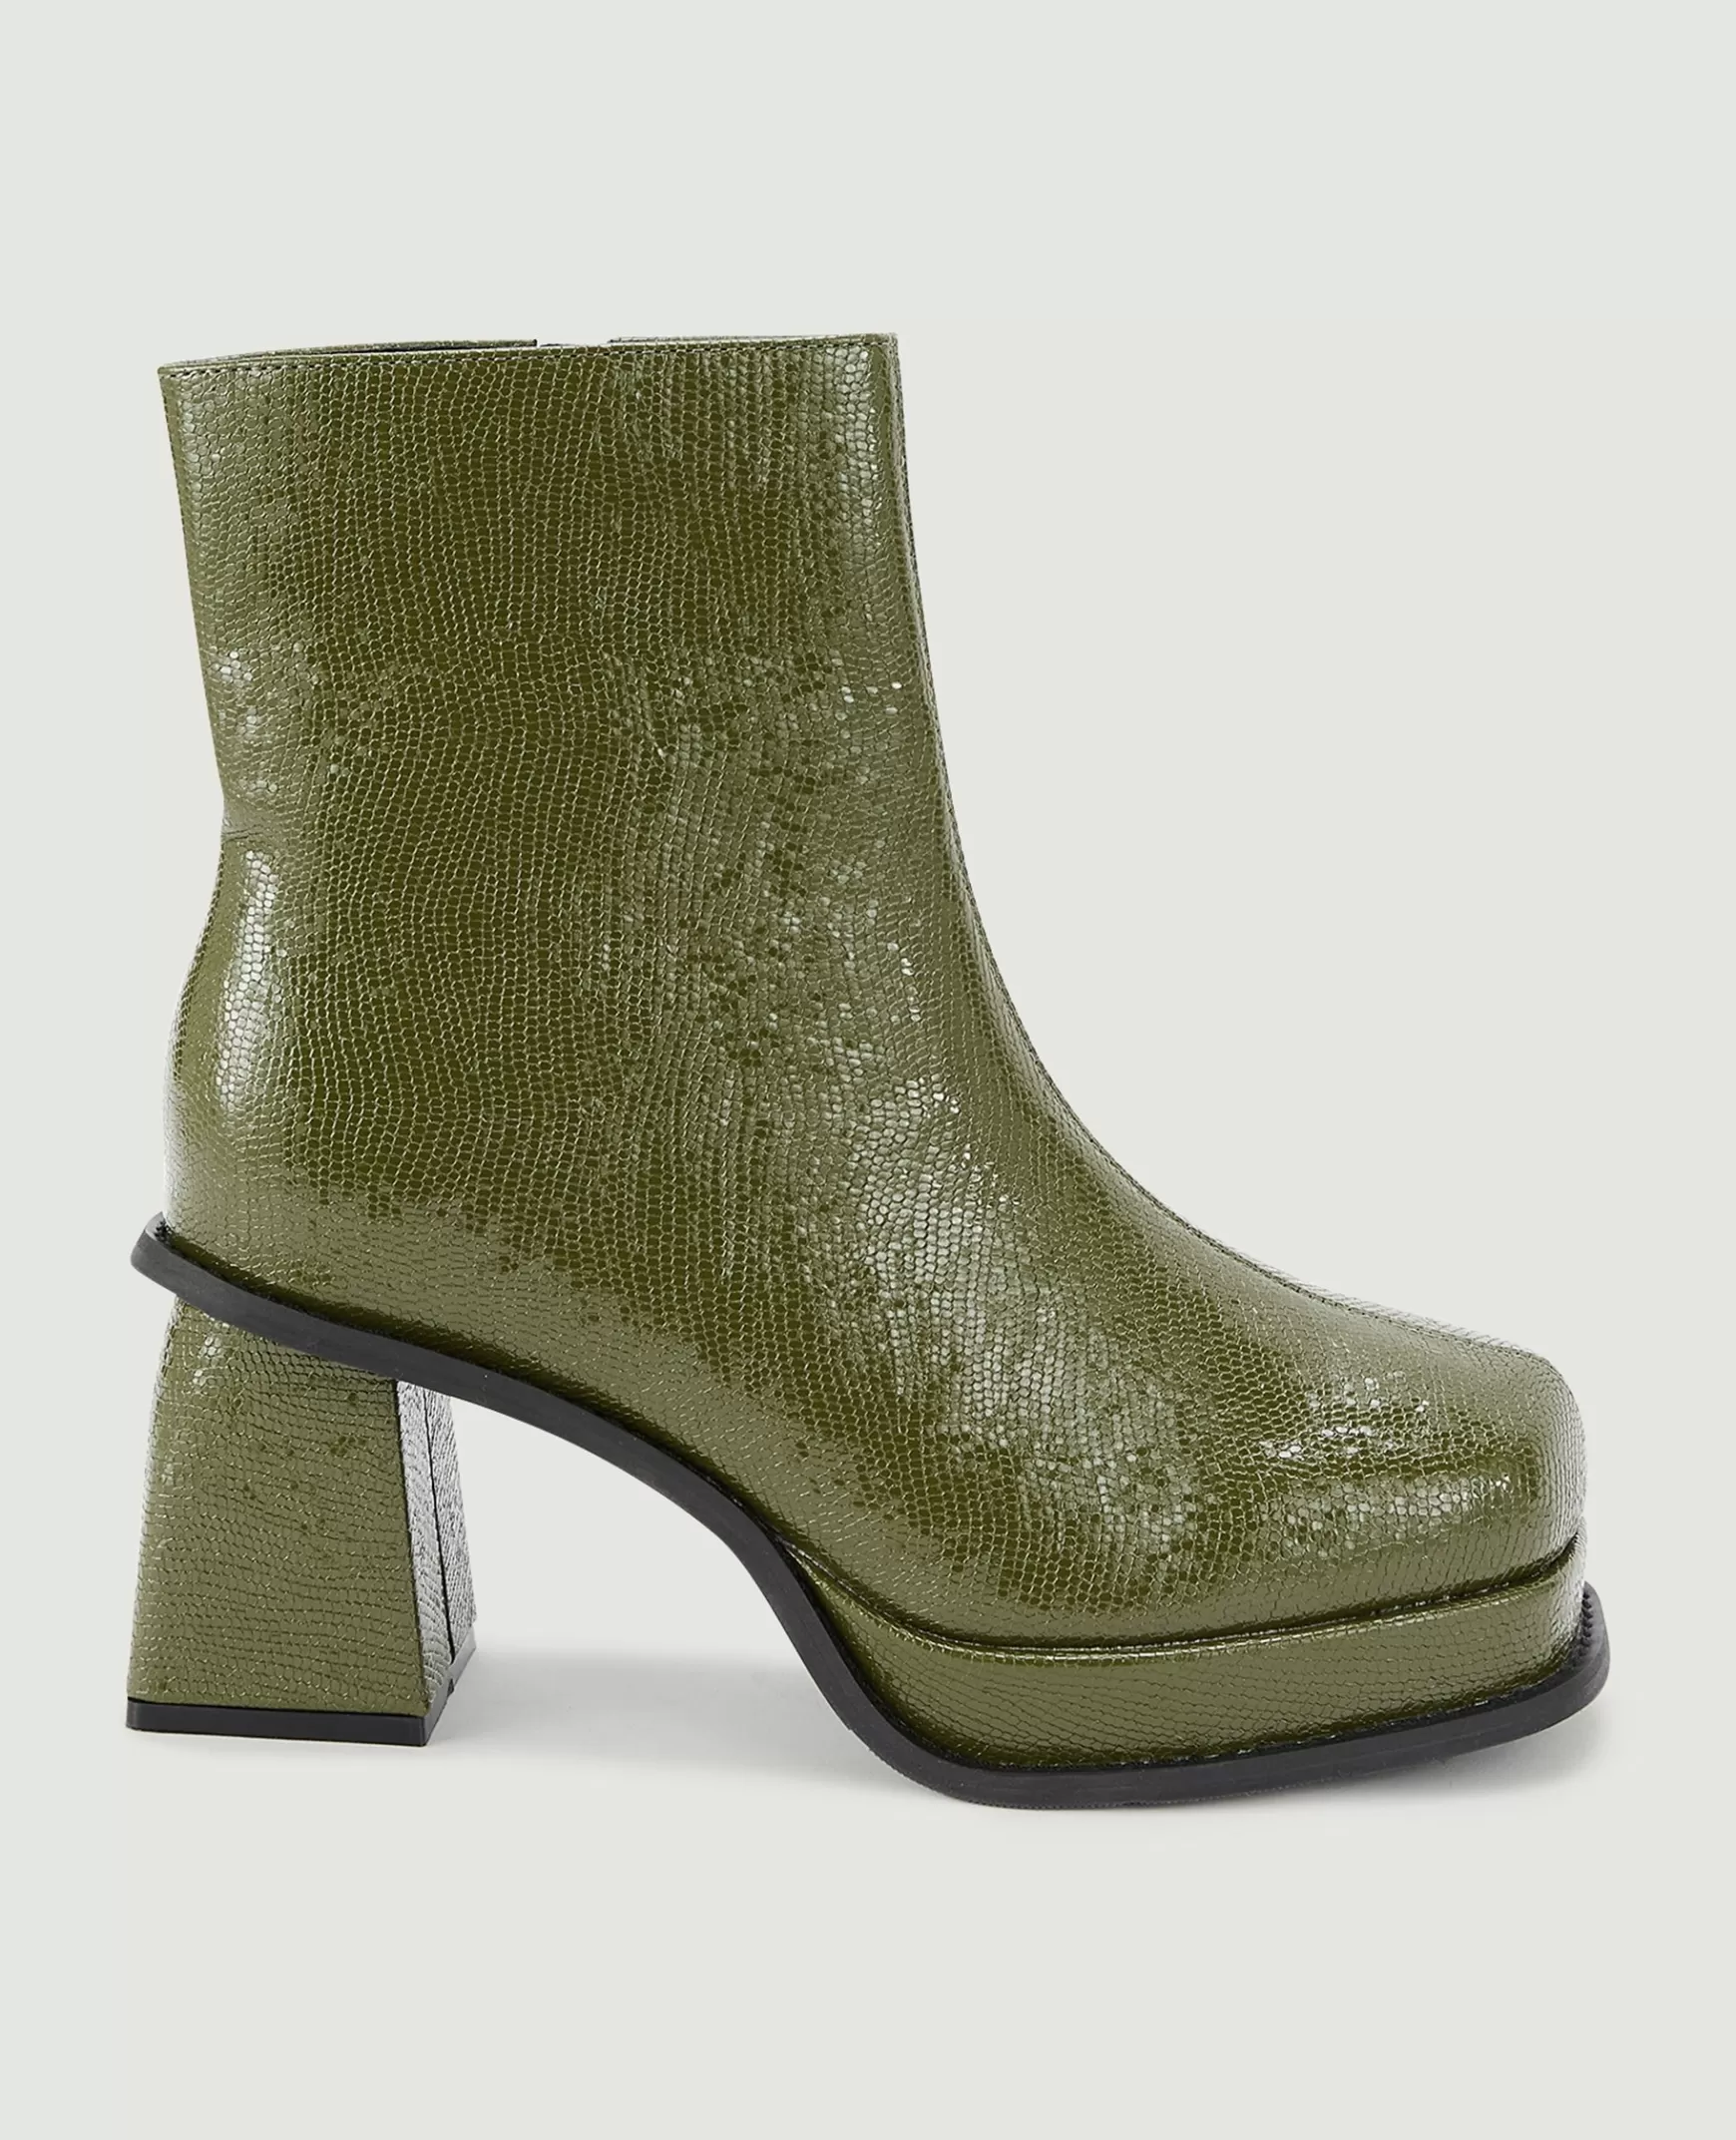 Pimkie Boots bouts carrs semelles compenses - Vert olive Vertolive Outlet